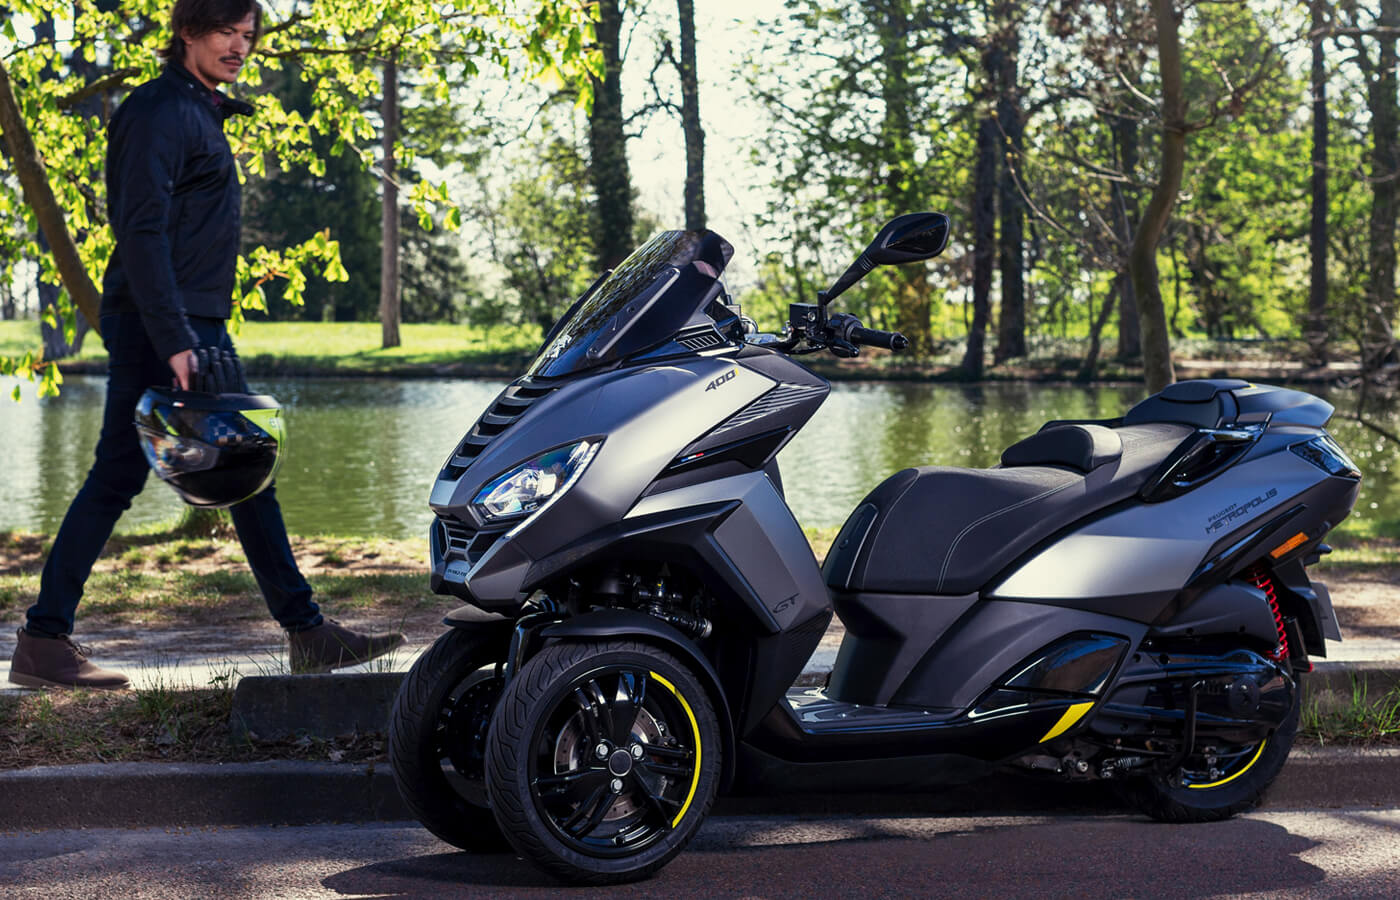 Descubre nuestros scooters eléctricos 3 ruedas - Peugeot Motocycles